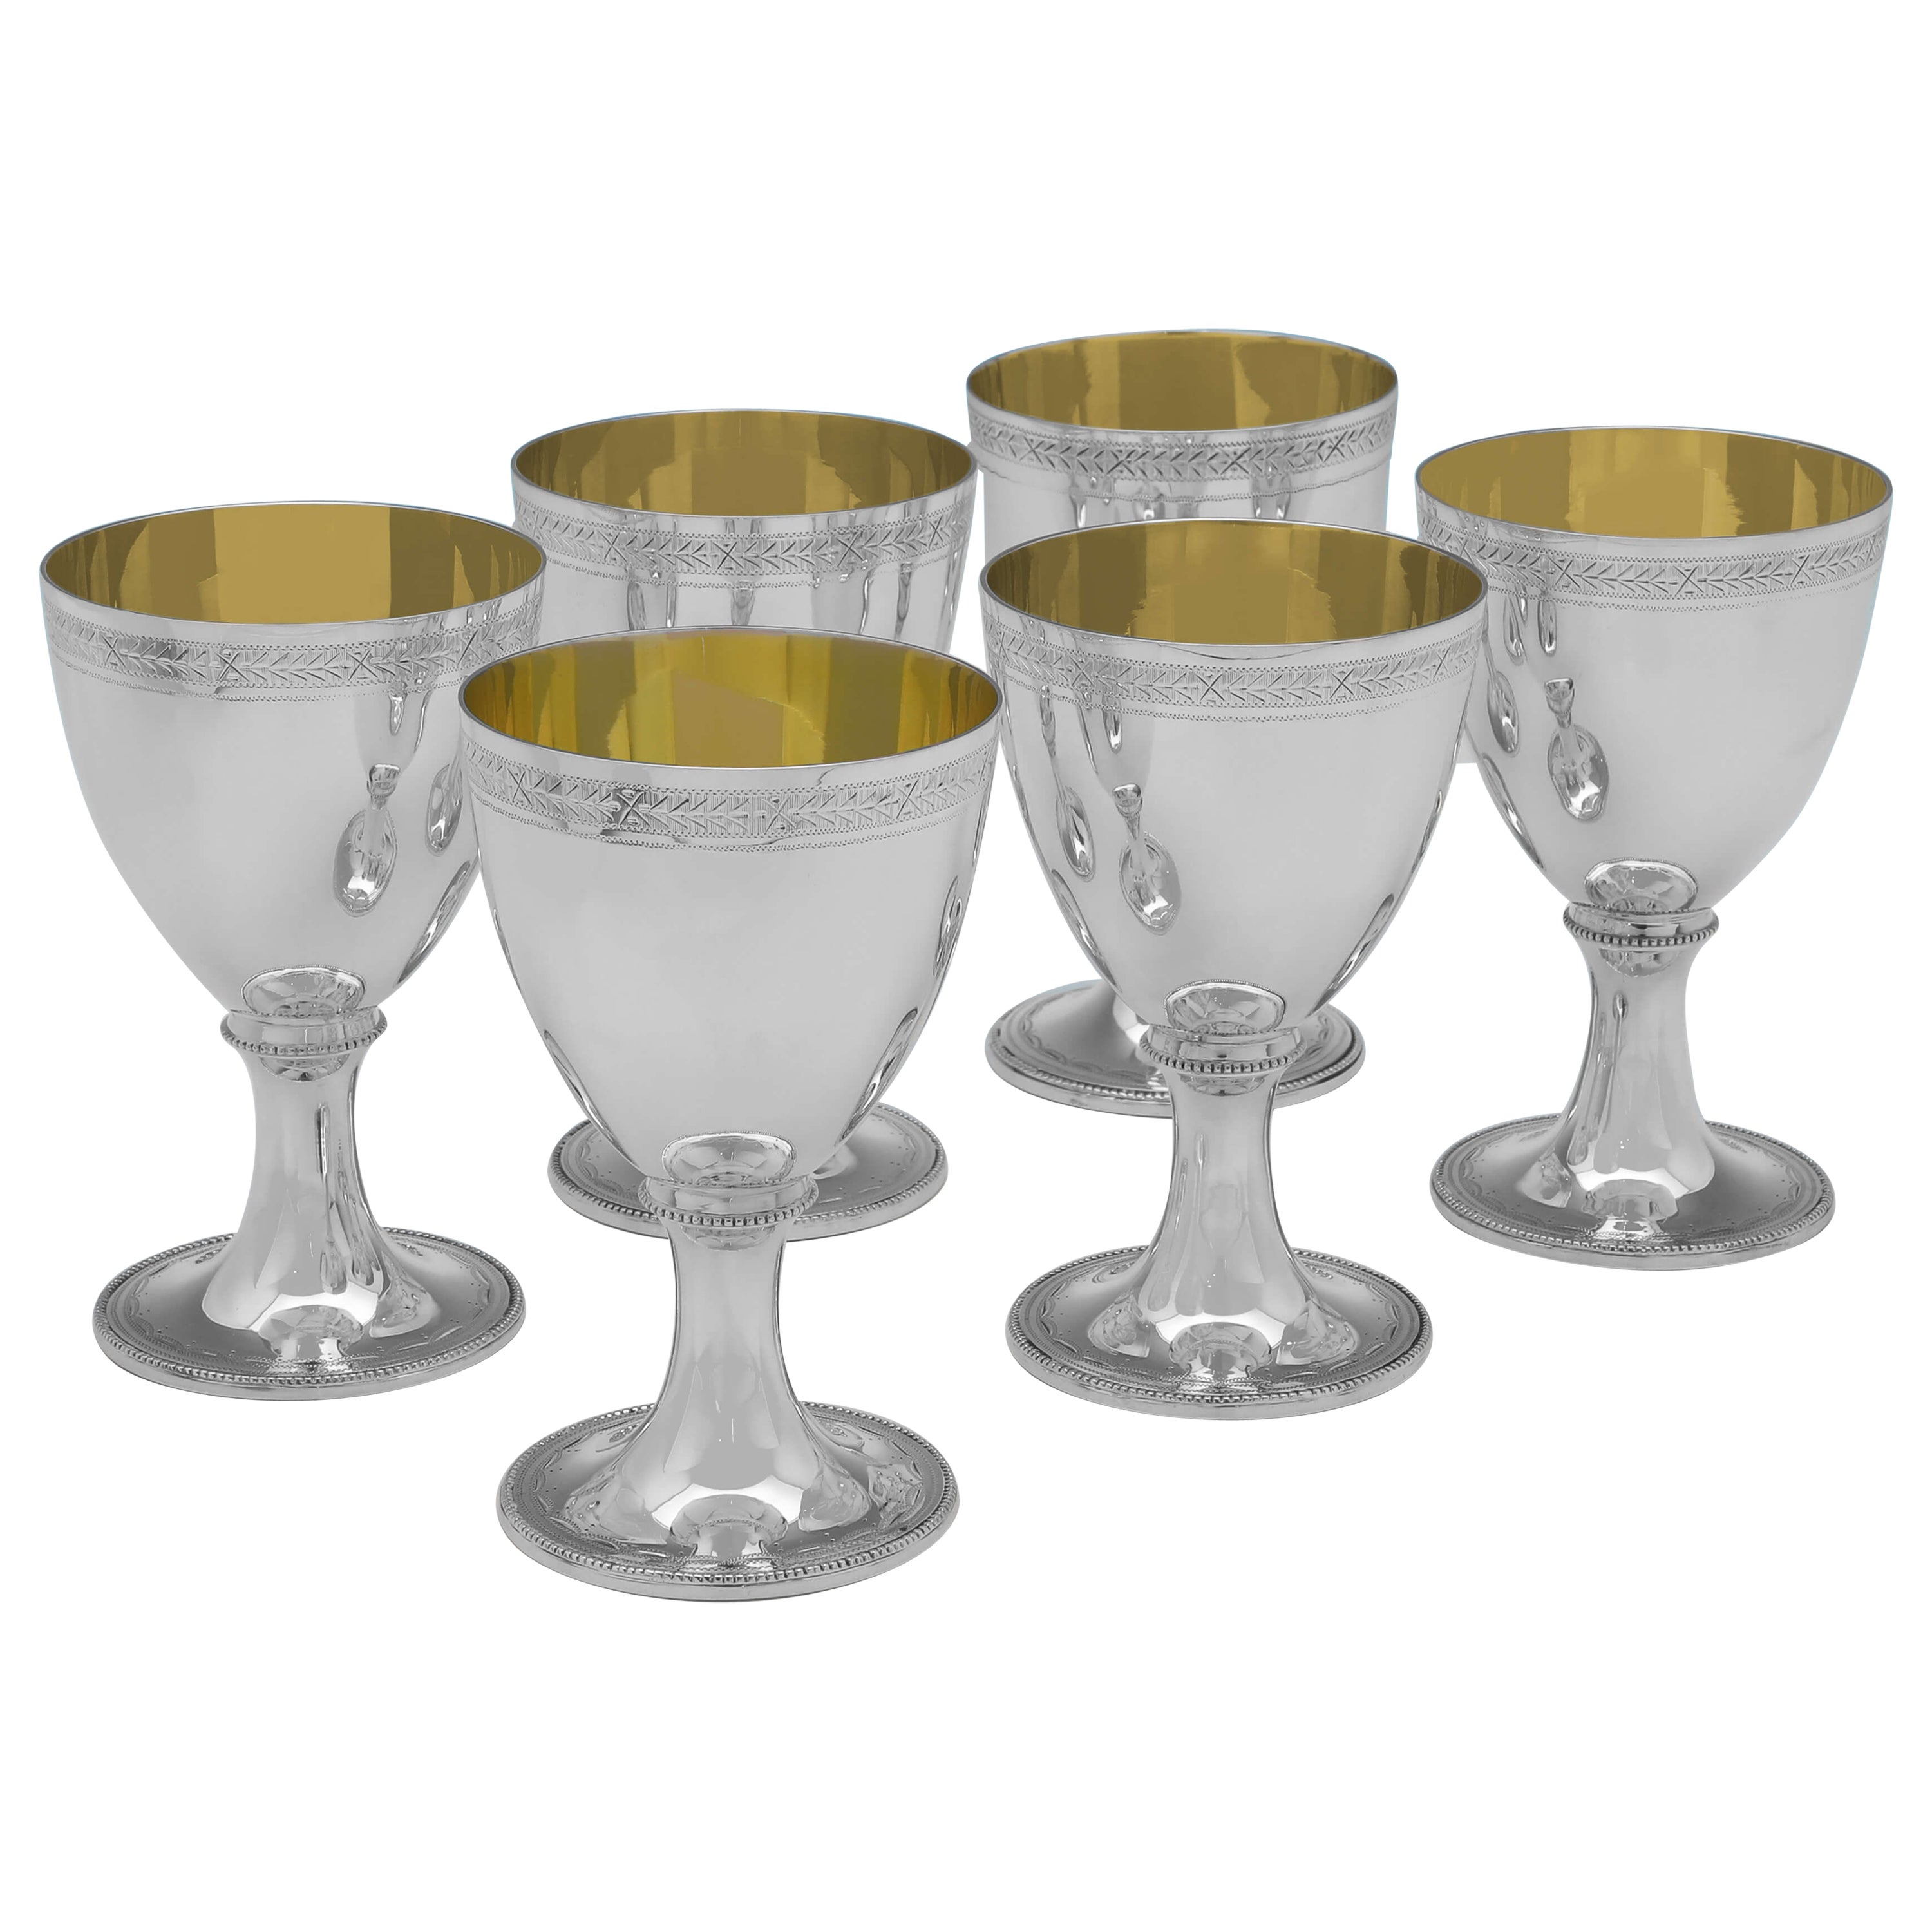 Neoclassical Design Set of 6 Sterling Silver Goblets - C. J. Vander 2000 For Sale